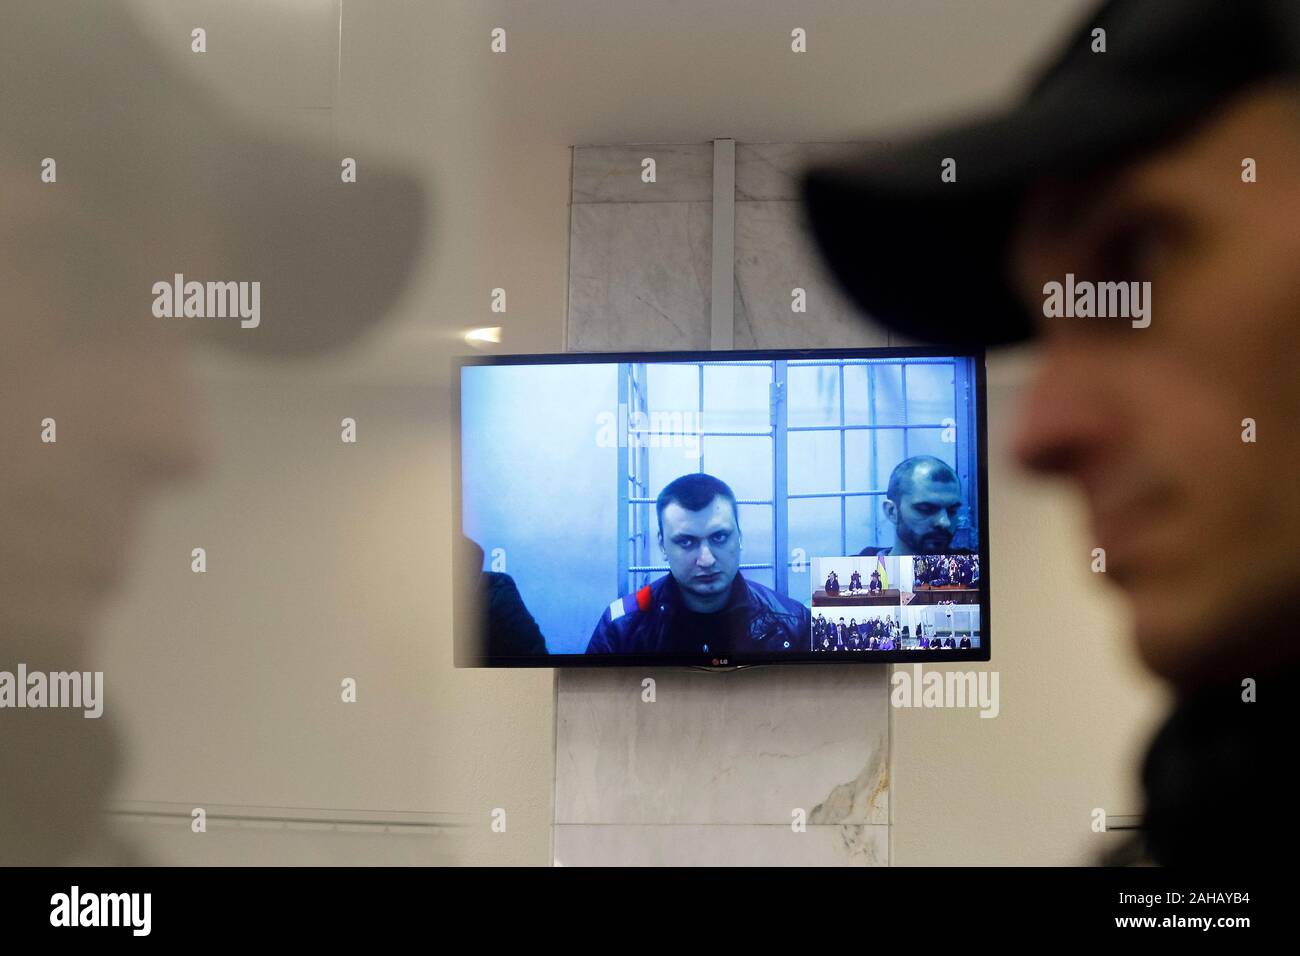 Serhii Zinchenko, Pavlo et Yanyshevsky Abroskin Oleh, anciens membres de la police anti-émeute Berkut, accusés de meurtre de manifestants au cours de l'Euromaidan manifestations en 2014, ont été observés sur un écran qu'ils y participent par liaison vidéo lors d'une audience à la Cour d'appel de Kiev. Banque D'Images